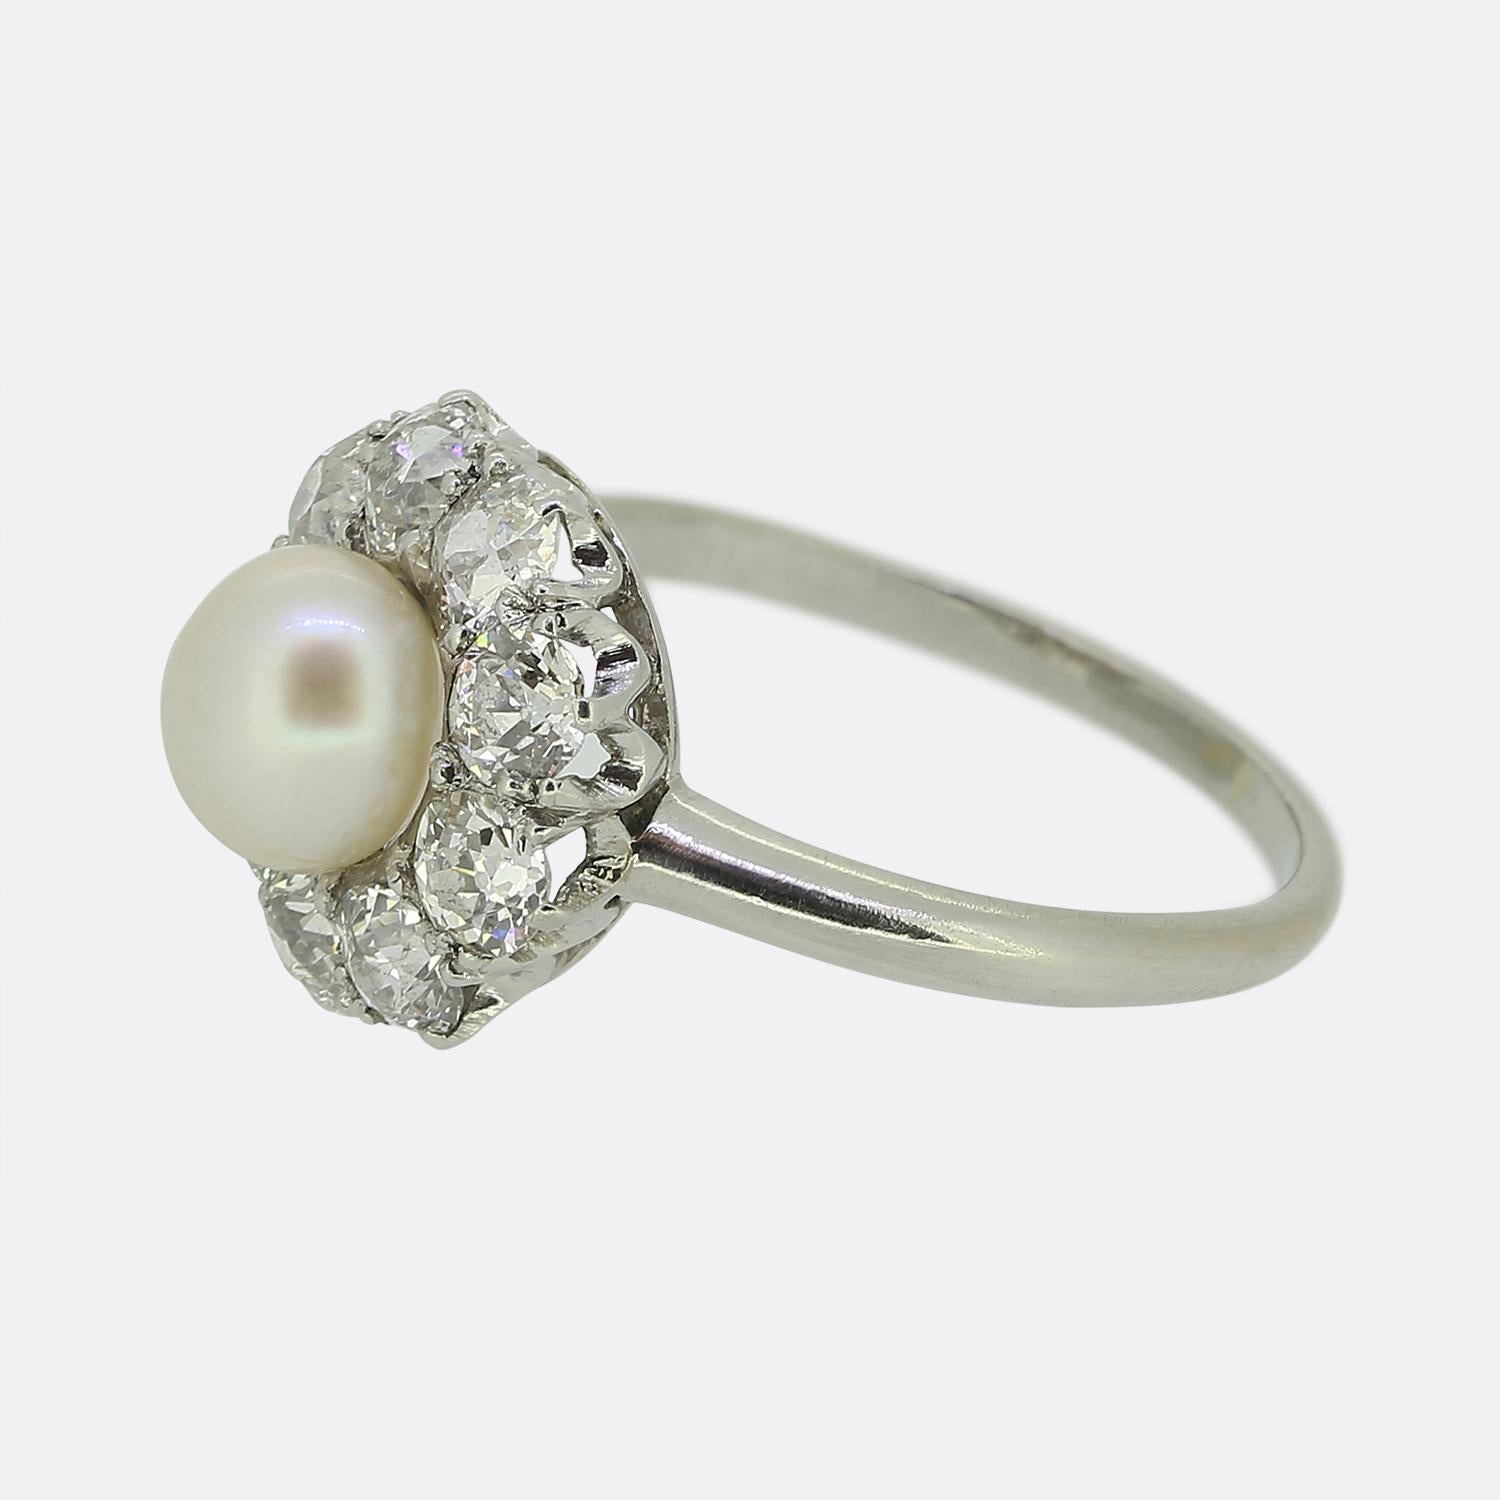 Nous avons ici une magnifique bague à perles et à diamants datant du début du 20e siècle. Une perle blanche ronde naturelle d'un bel éclat se trouve au centre de la face et est entourée de gros diamants de taille ancienne bien assortis. La bague a